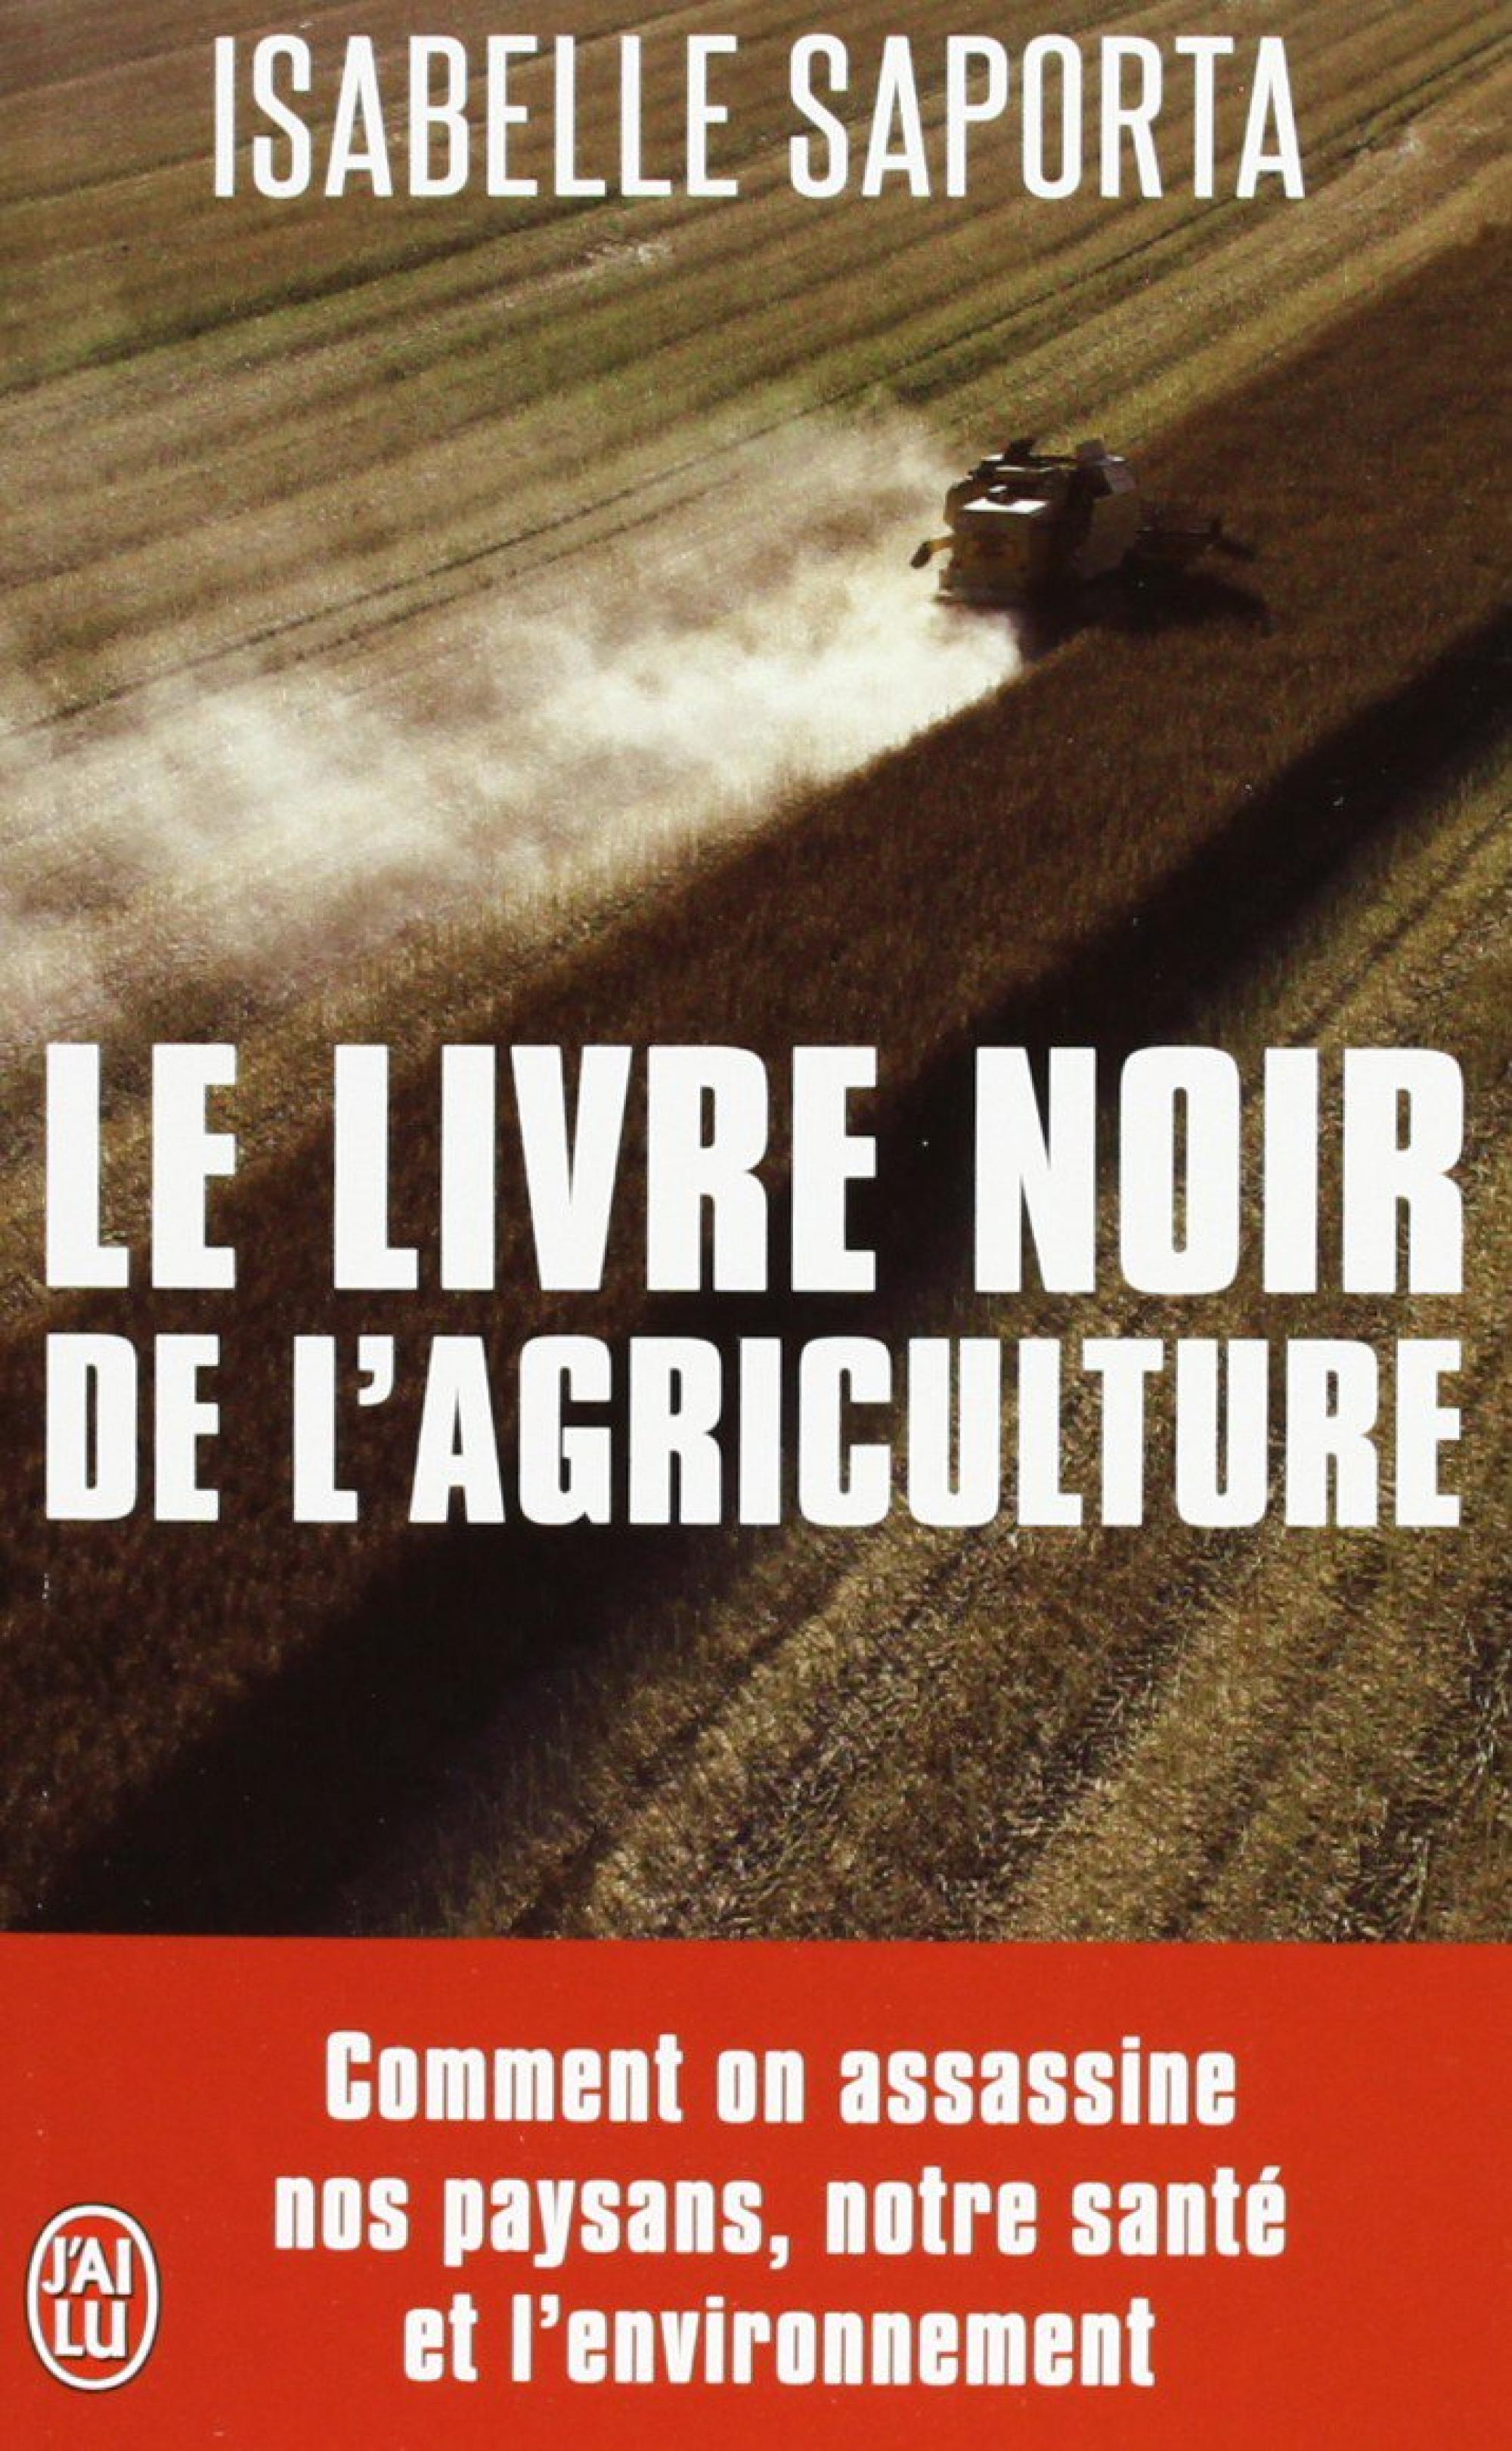 Le livre noir de l'agriculture